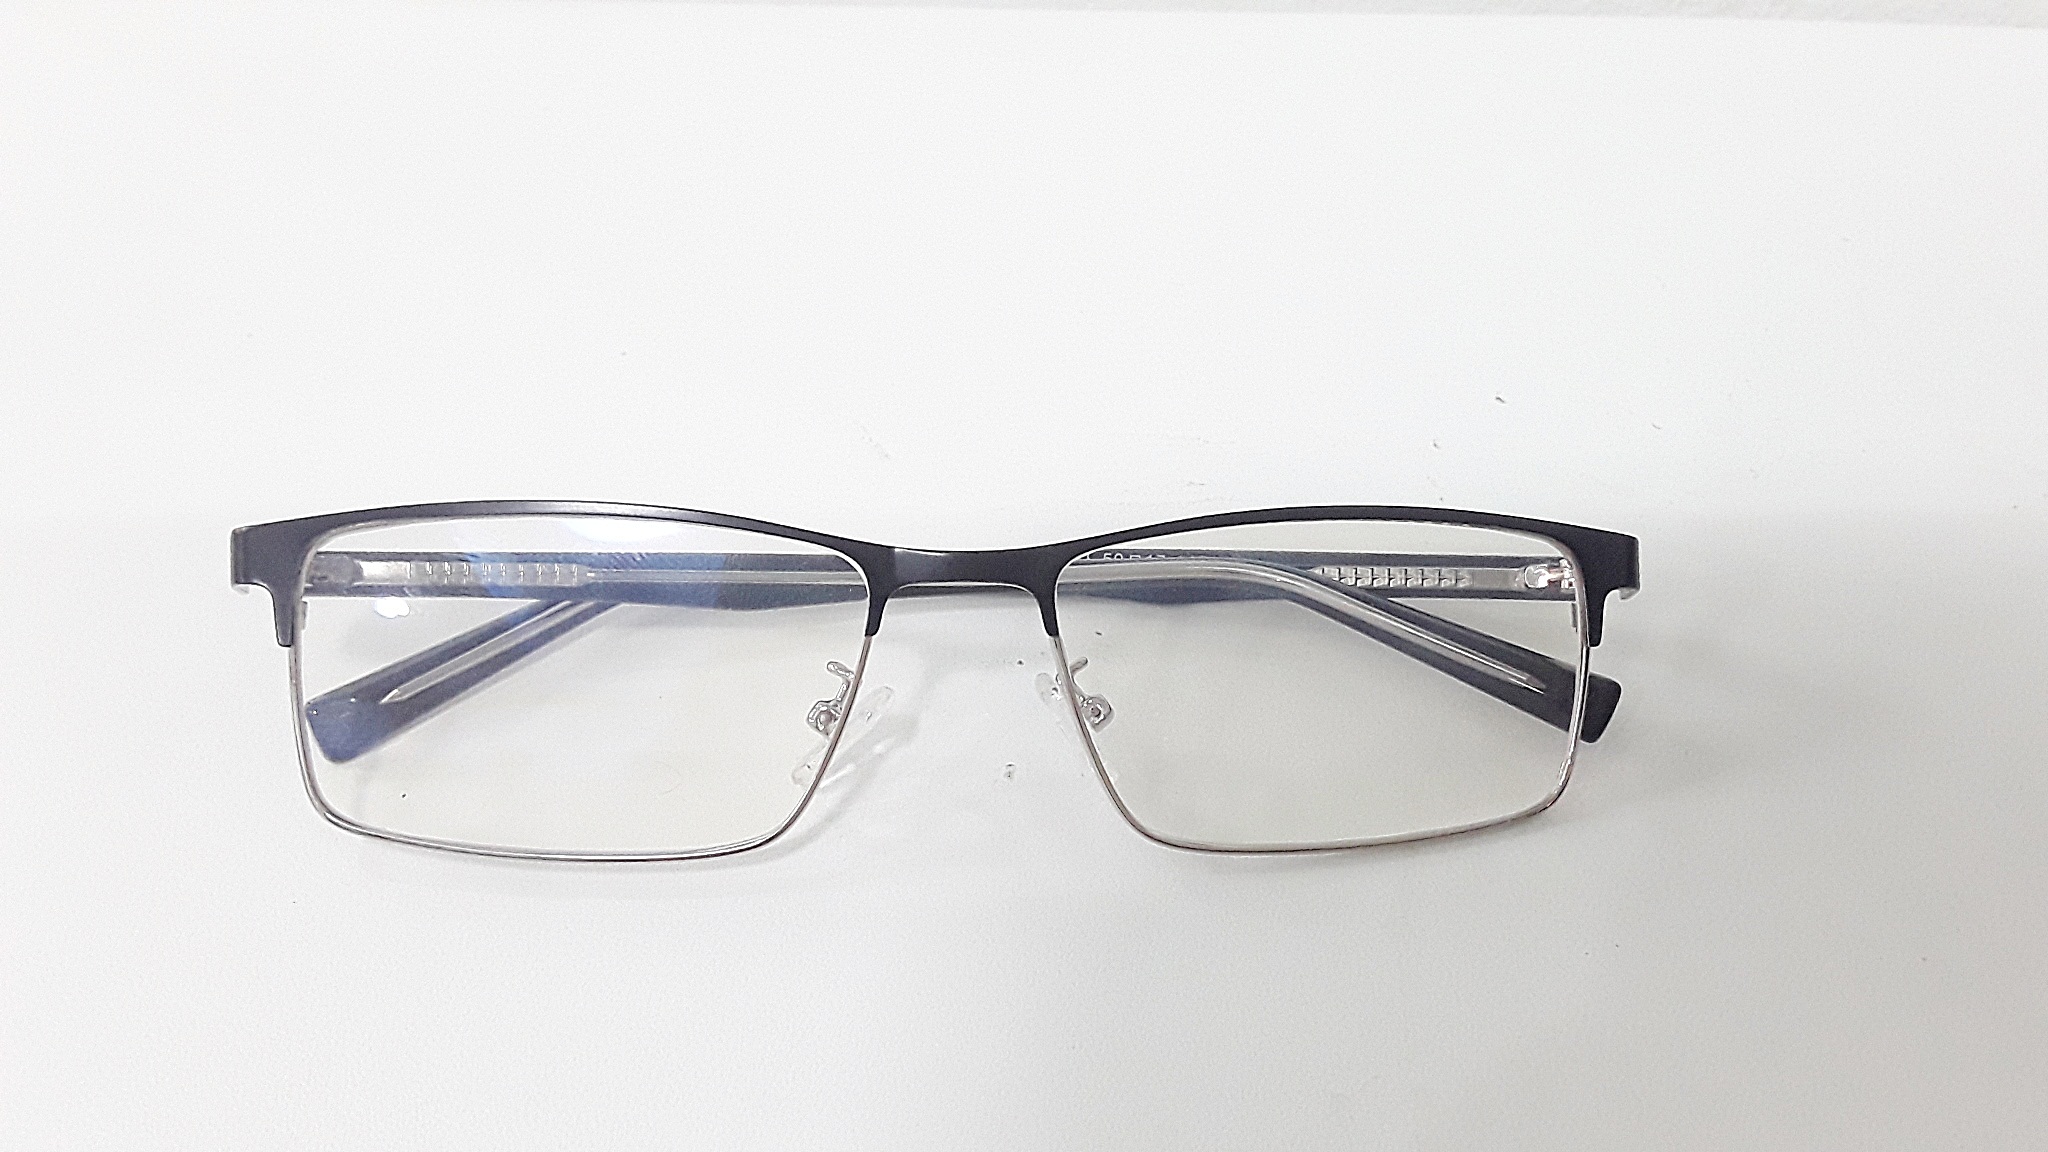 แว่นสายตาสั้น แว่นตา แว่นสายตา ตัดแว่น กรอบพร้อมเลนส์ ออโต้เปลี่ยนสี เมื่อโดนแดด แว่นตัดประกอบเลนส์แท้จากร้านแว่นโดยตรง1921ดำเงิน